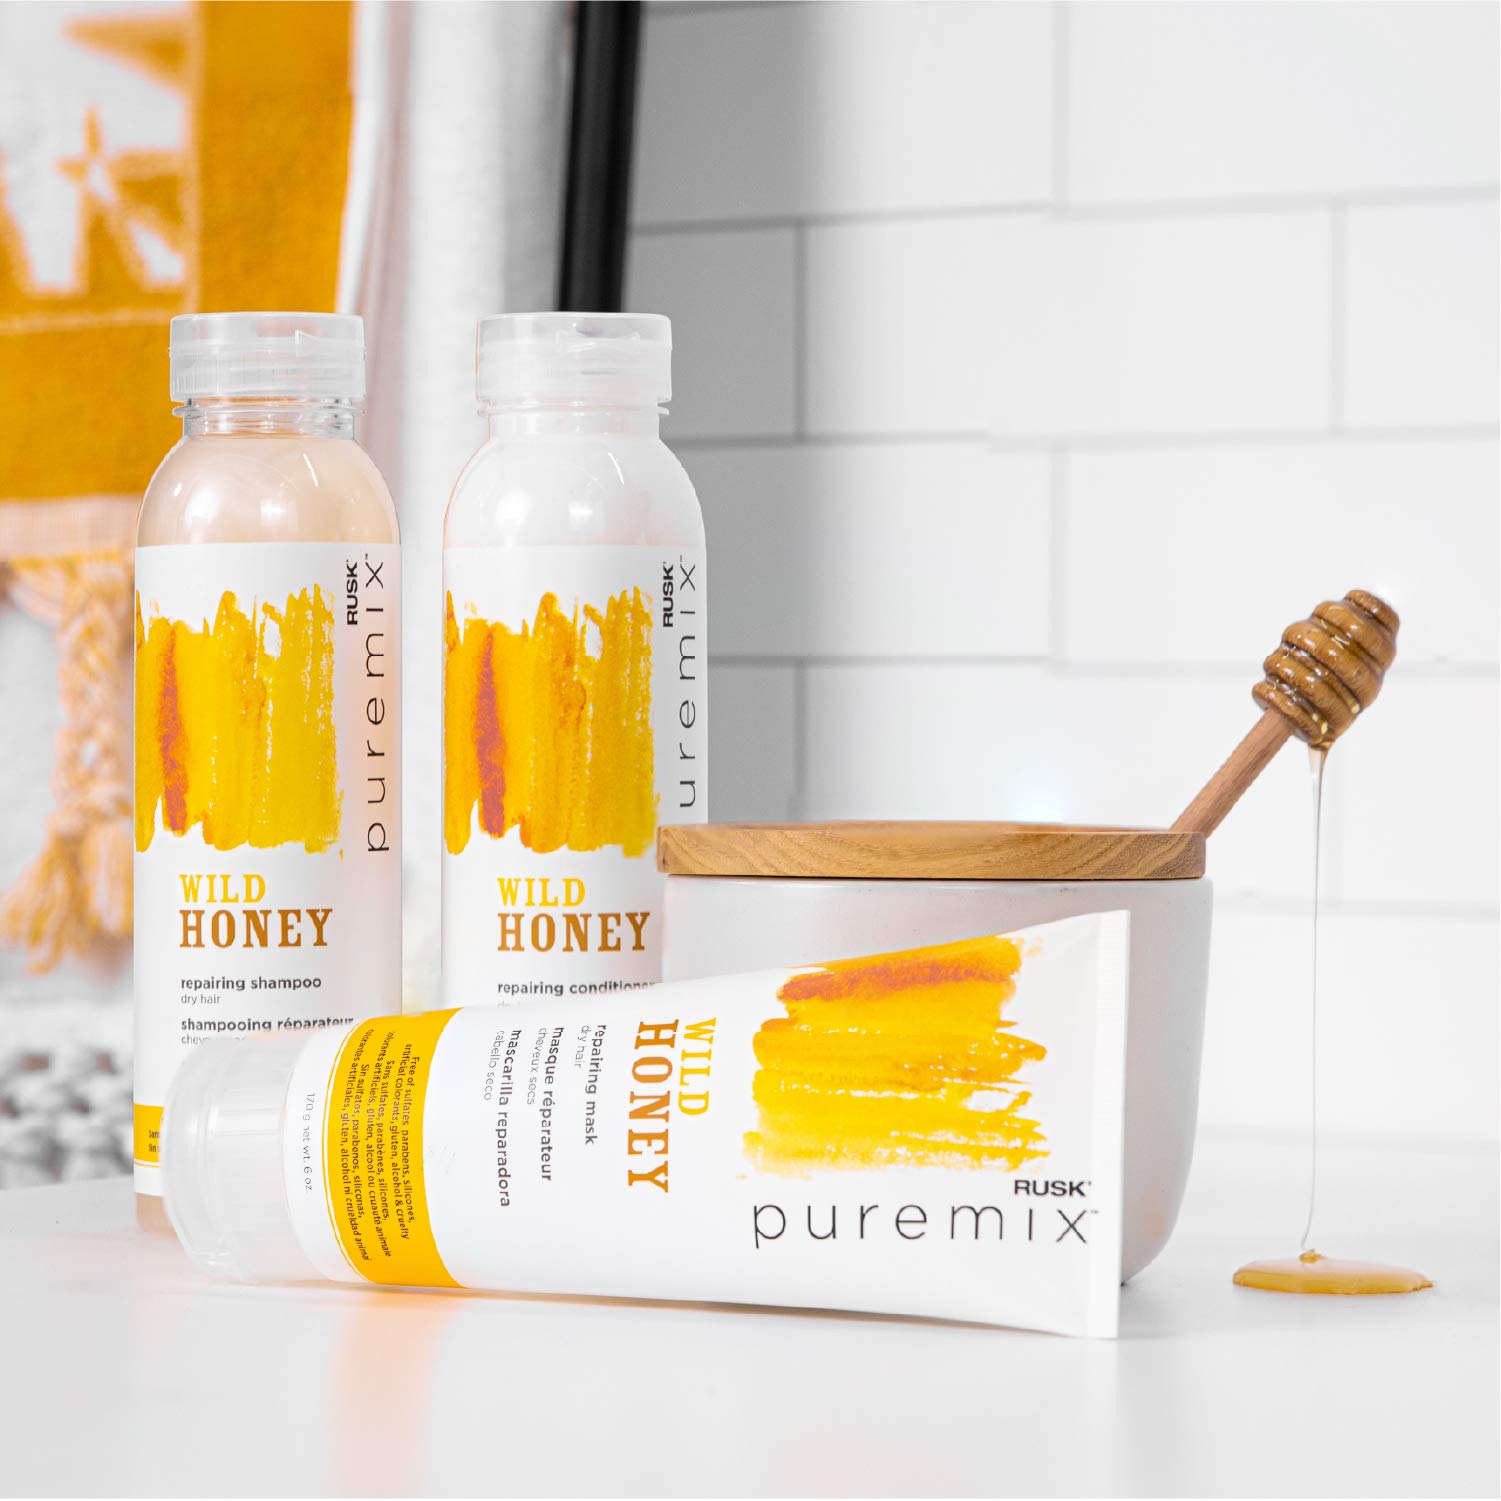 Rusk Puremix Wild Honey Deeply Moisturizing + Repairing, Softens + Adds Shine to Hair, Sulfate-Free